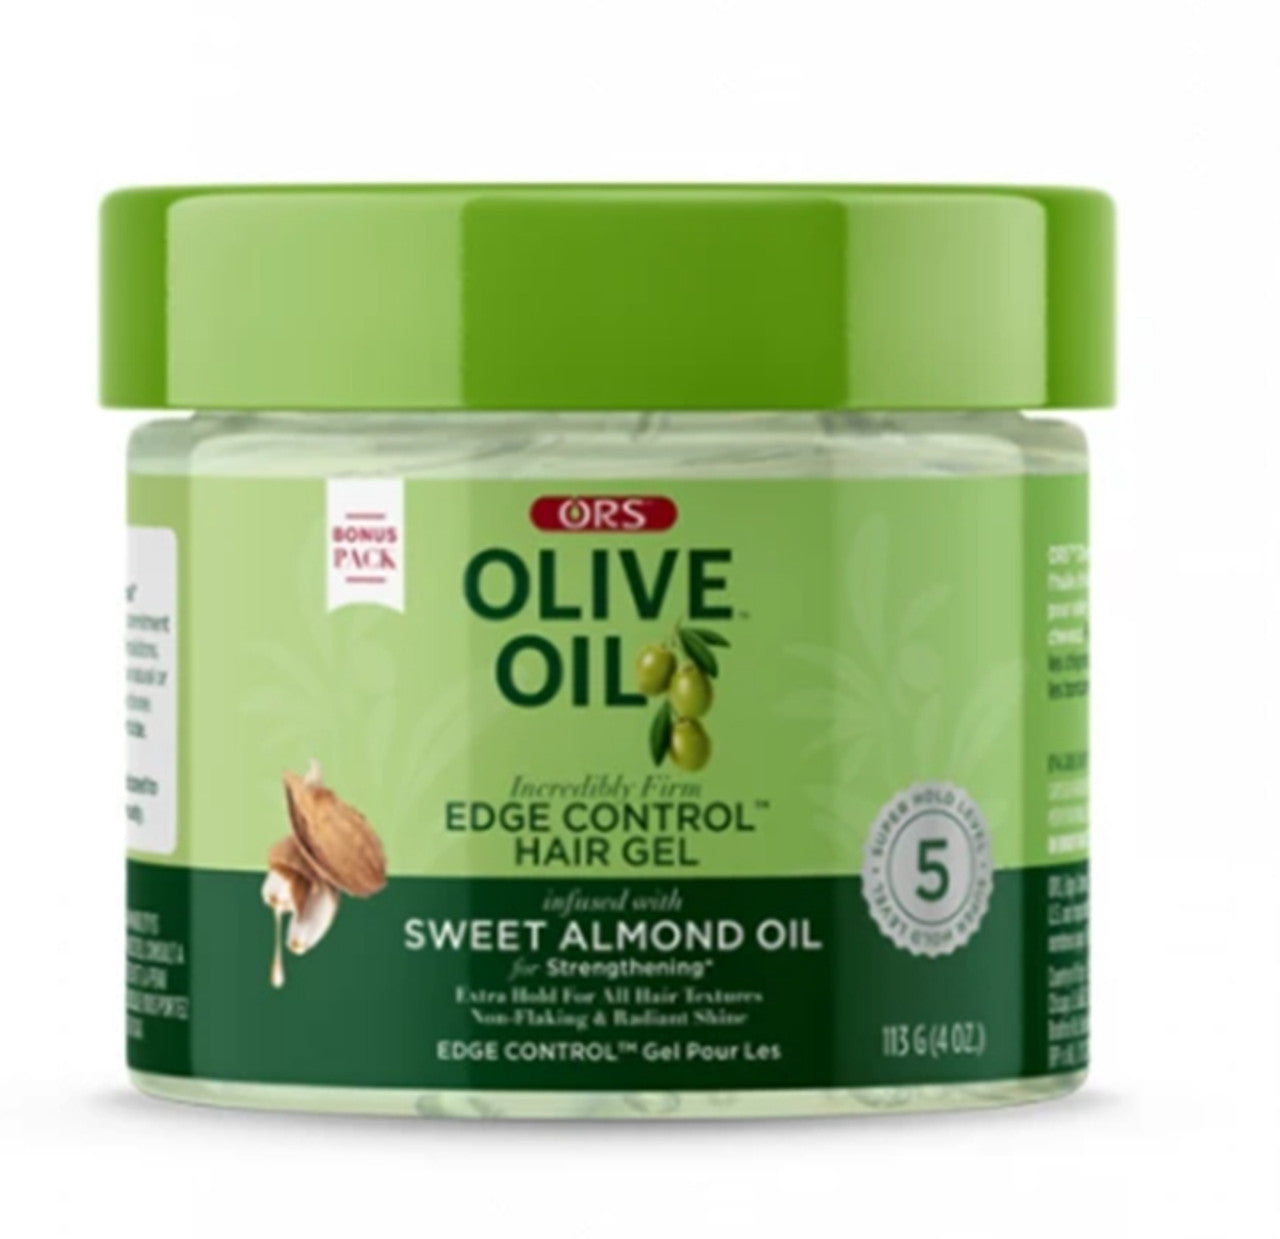 Organic - Edge Control Sweet almond oil